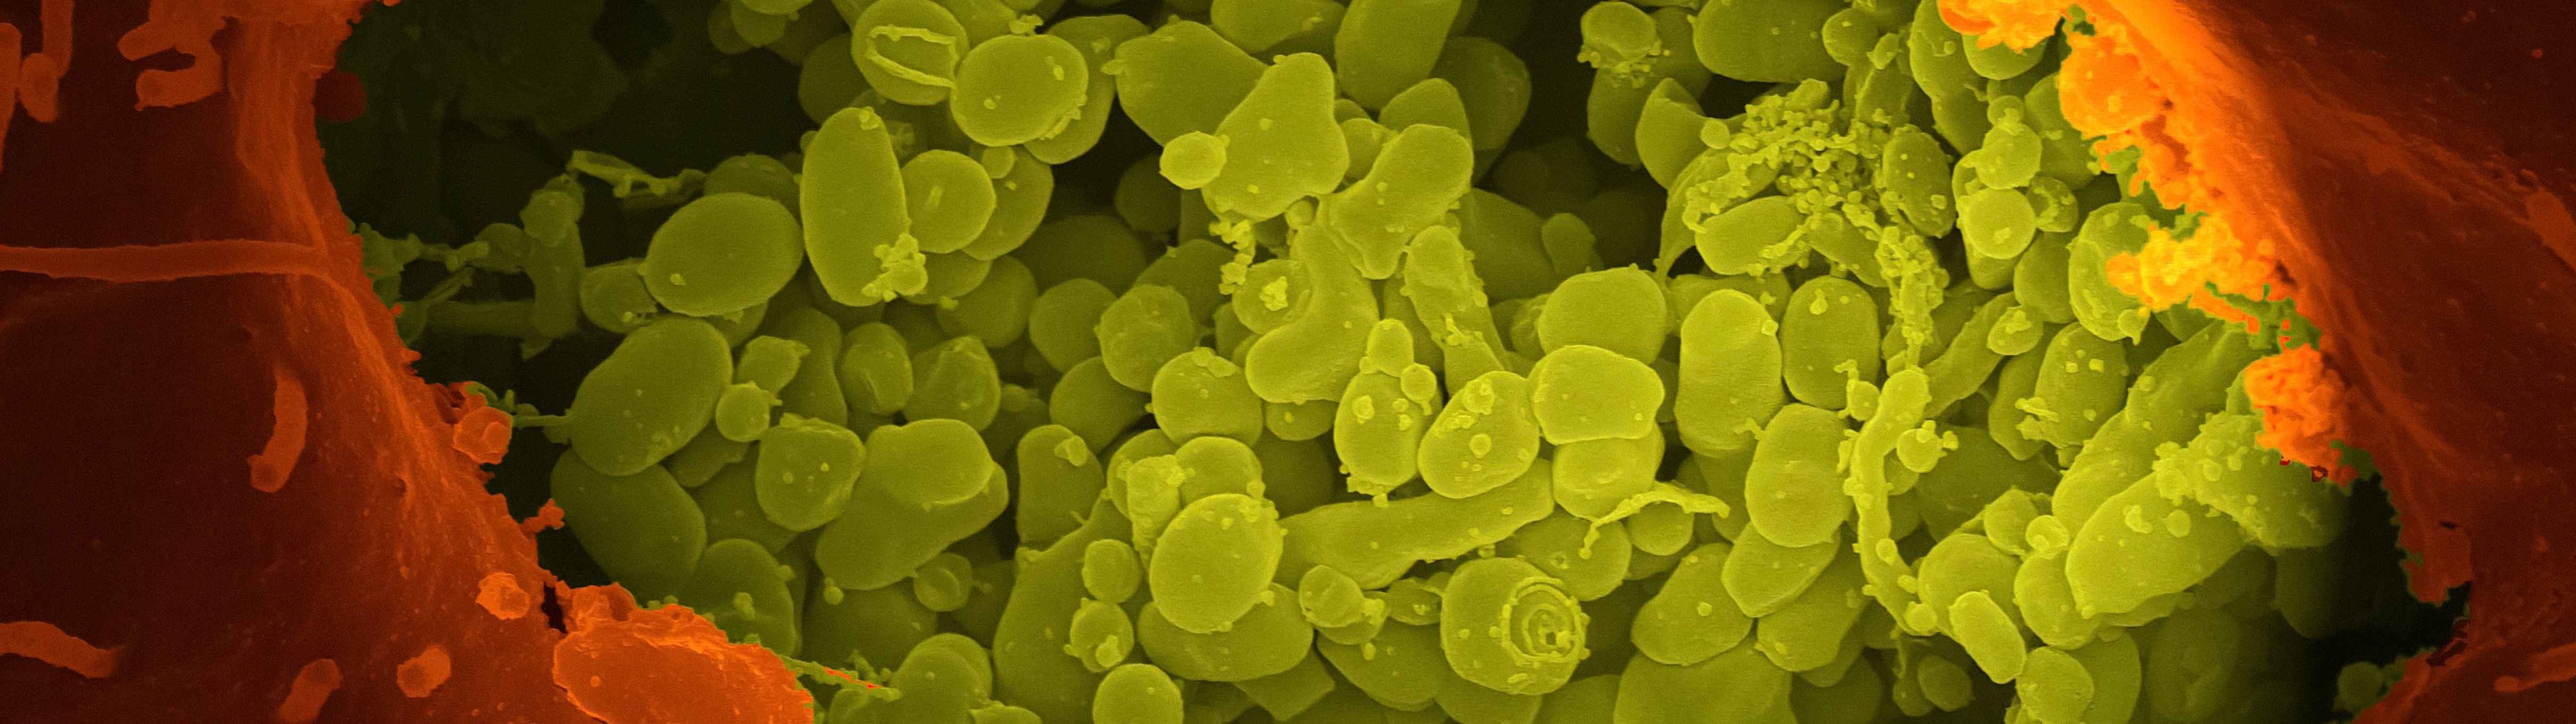 Investigadores españoles muestran la eficacia de combinar antibióticos frente a bacterias resistentes